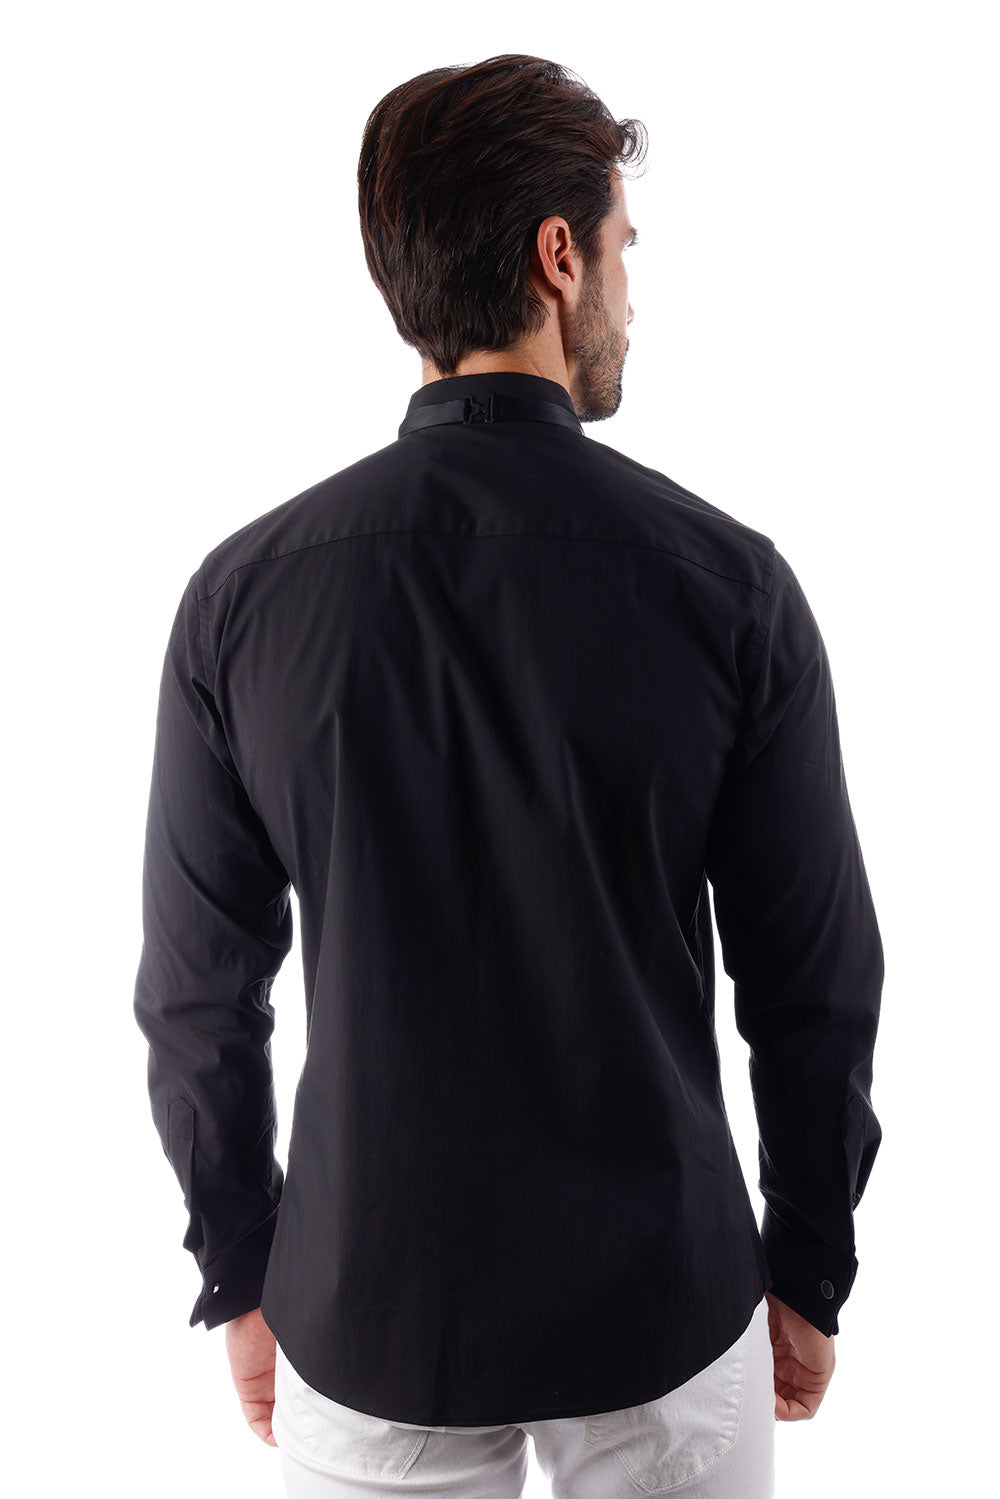 BARABAS Men's Tuxedo Wing Collar French Cuffs Long Sleeve Shirt 4txs02 Black